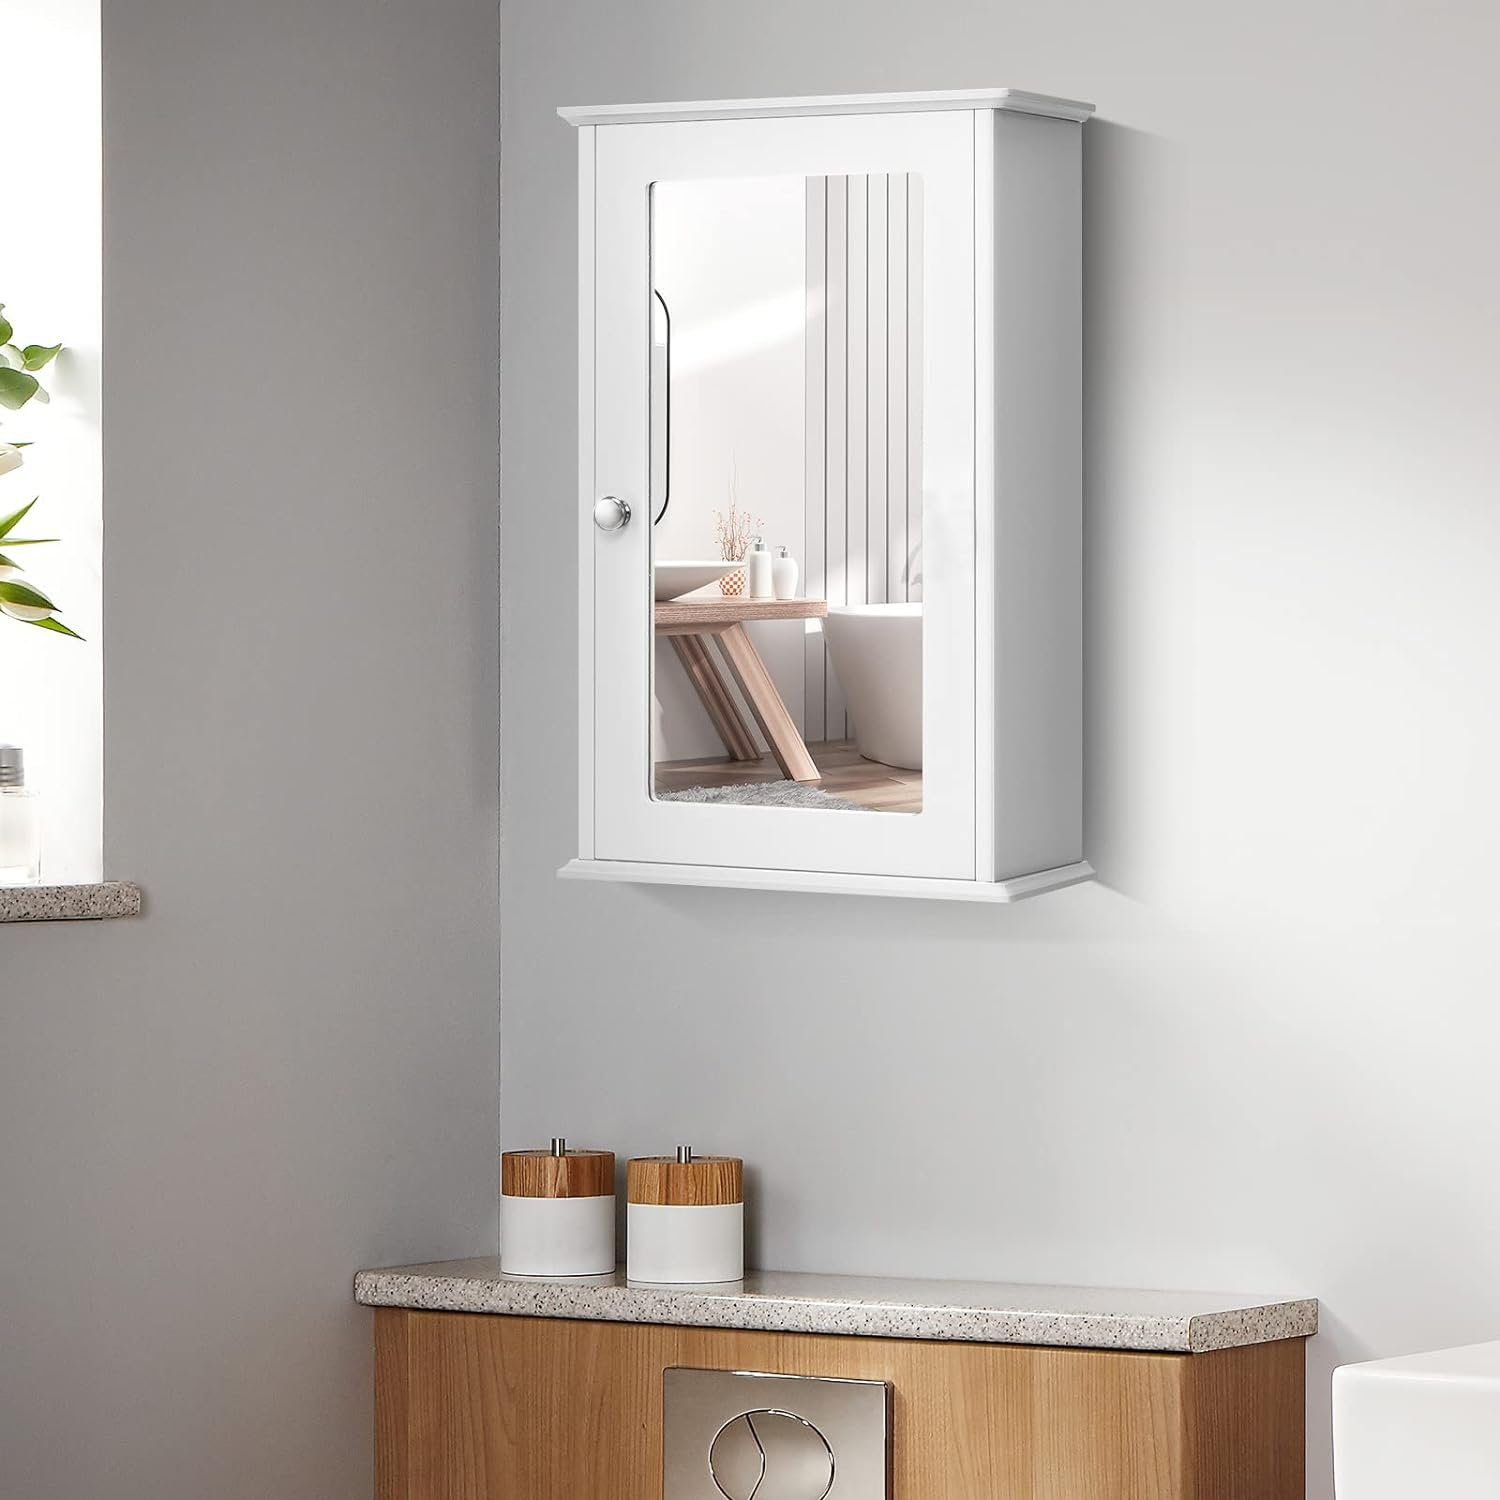 KOMFOTTEU Spiegelschrank mit Verstellbarer Ablage x x 15 34 Weiß cm 53